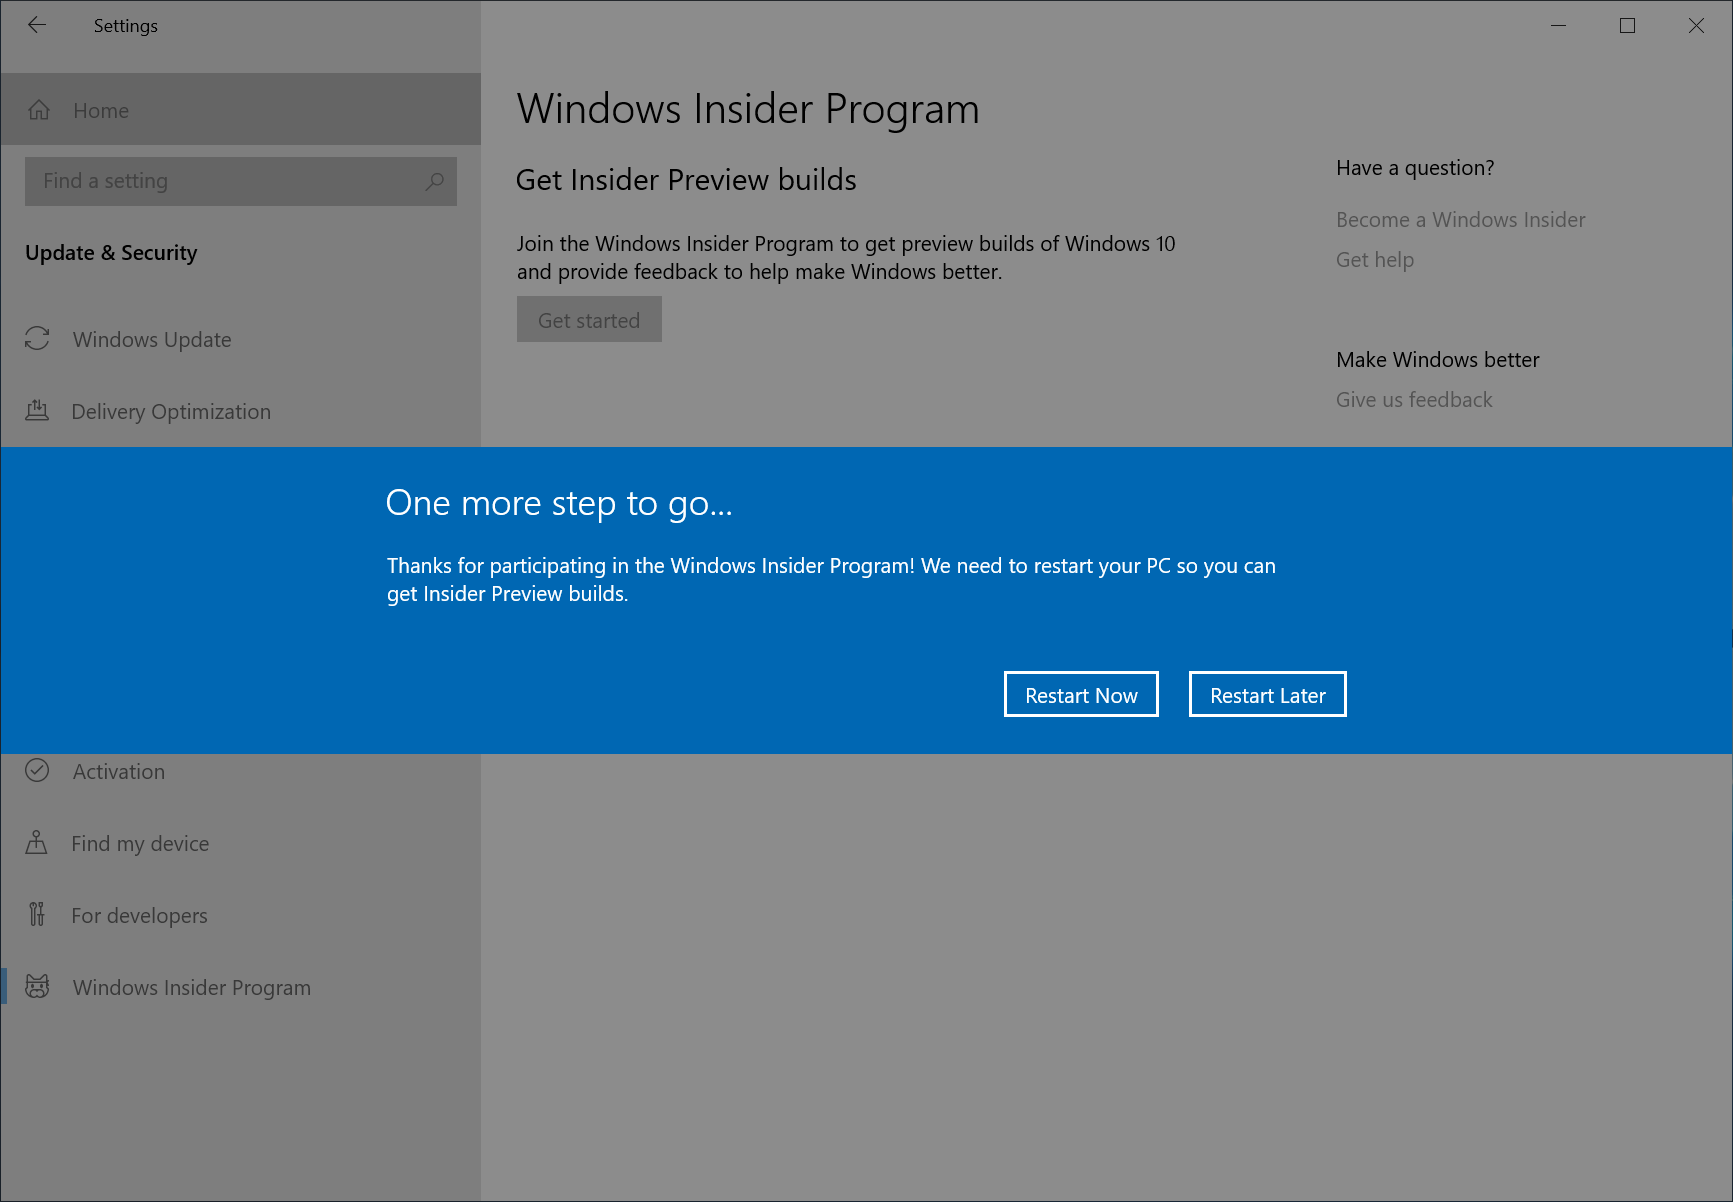 Windows 10 Updates November 2019 - A disaster 4db8c33b0af2534d824a84ec5626ab74.png